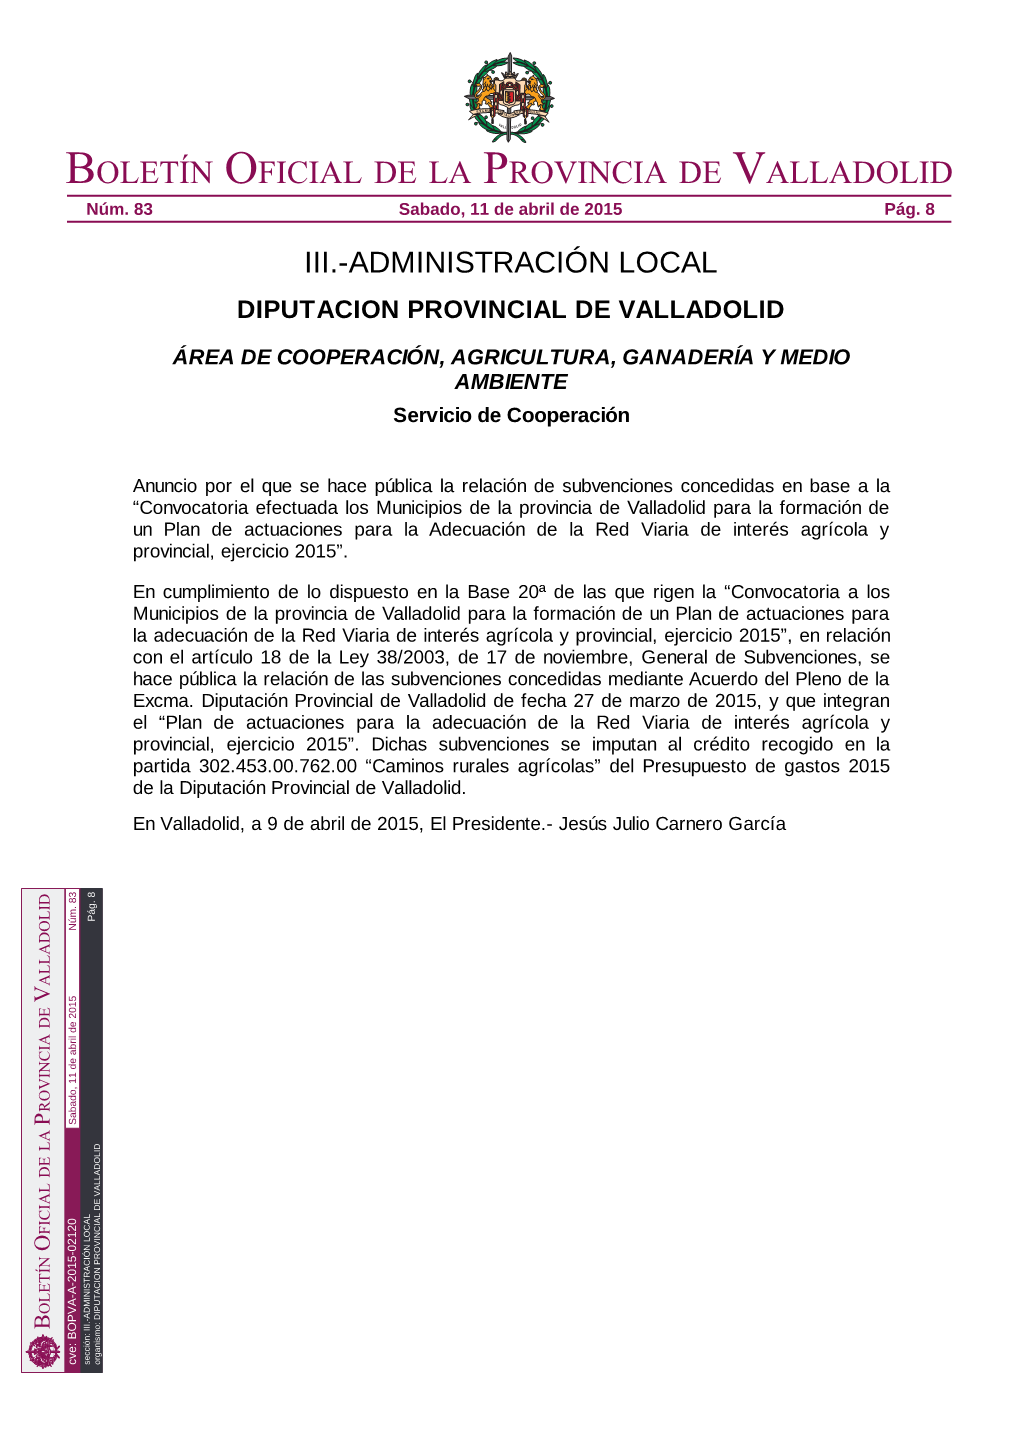 BOPVA-A-2015-02120 Sección: III.-ADMINISTRACIÓN LOCAL Organismo: DIPUTACION PROVINCIAL DE VALLADOLID Boletín Oficial De La Provincia De Valladolid